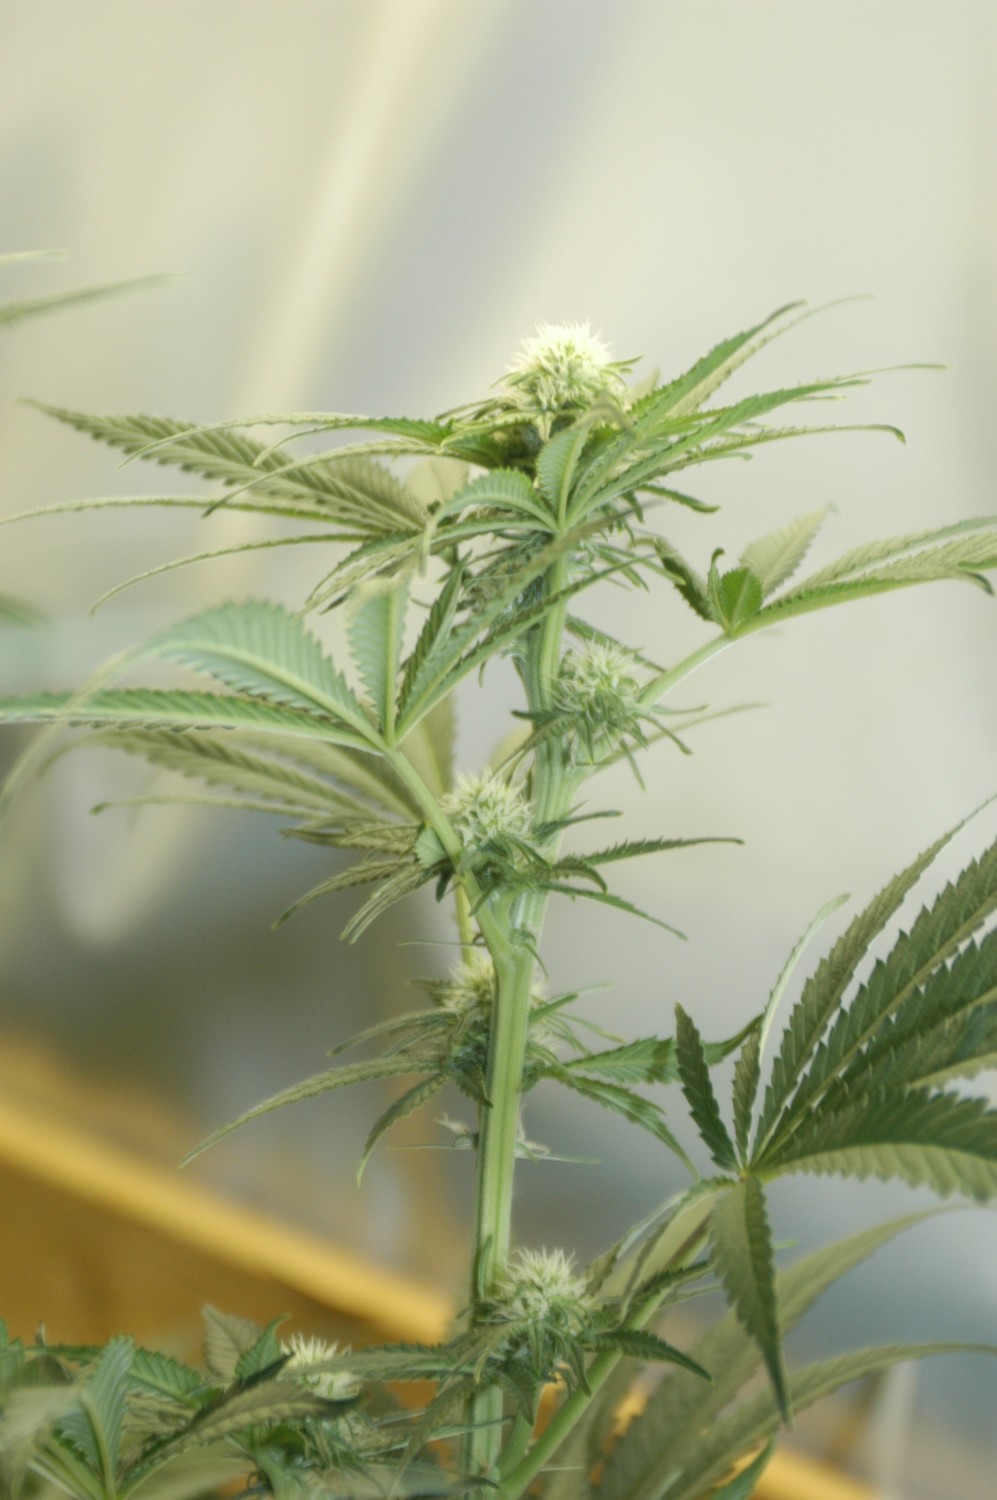 Si le projet de loi est adopté au Québec, chaque résidence aura droit de cultiver quatre plans de cannabis ayant des dimensions bien précises.